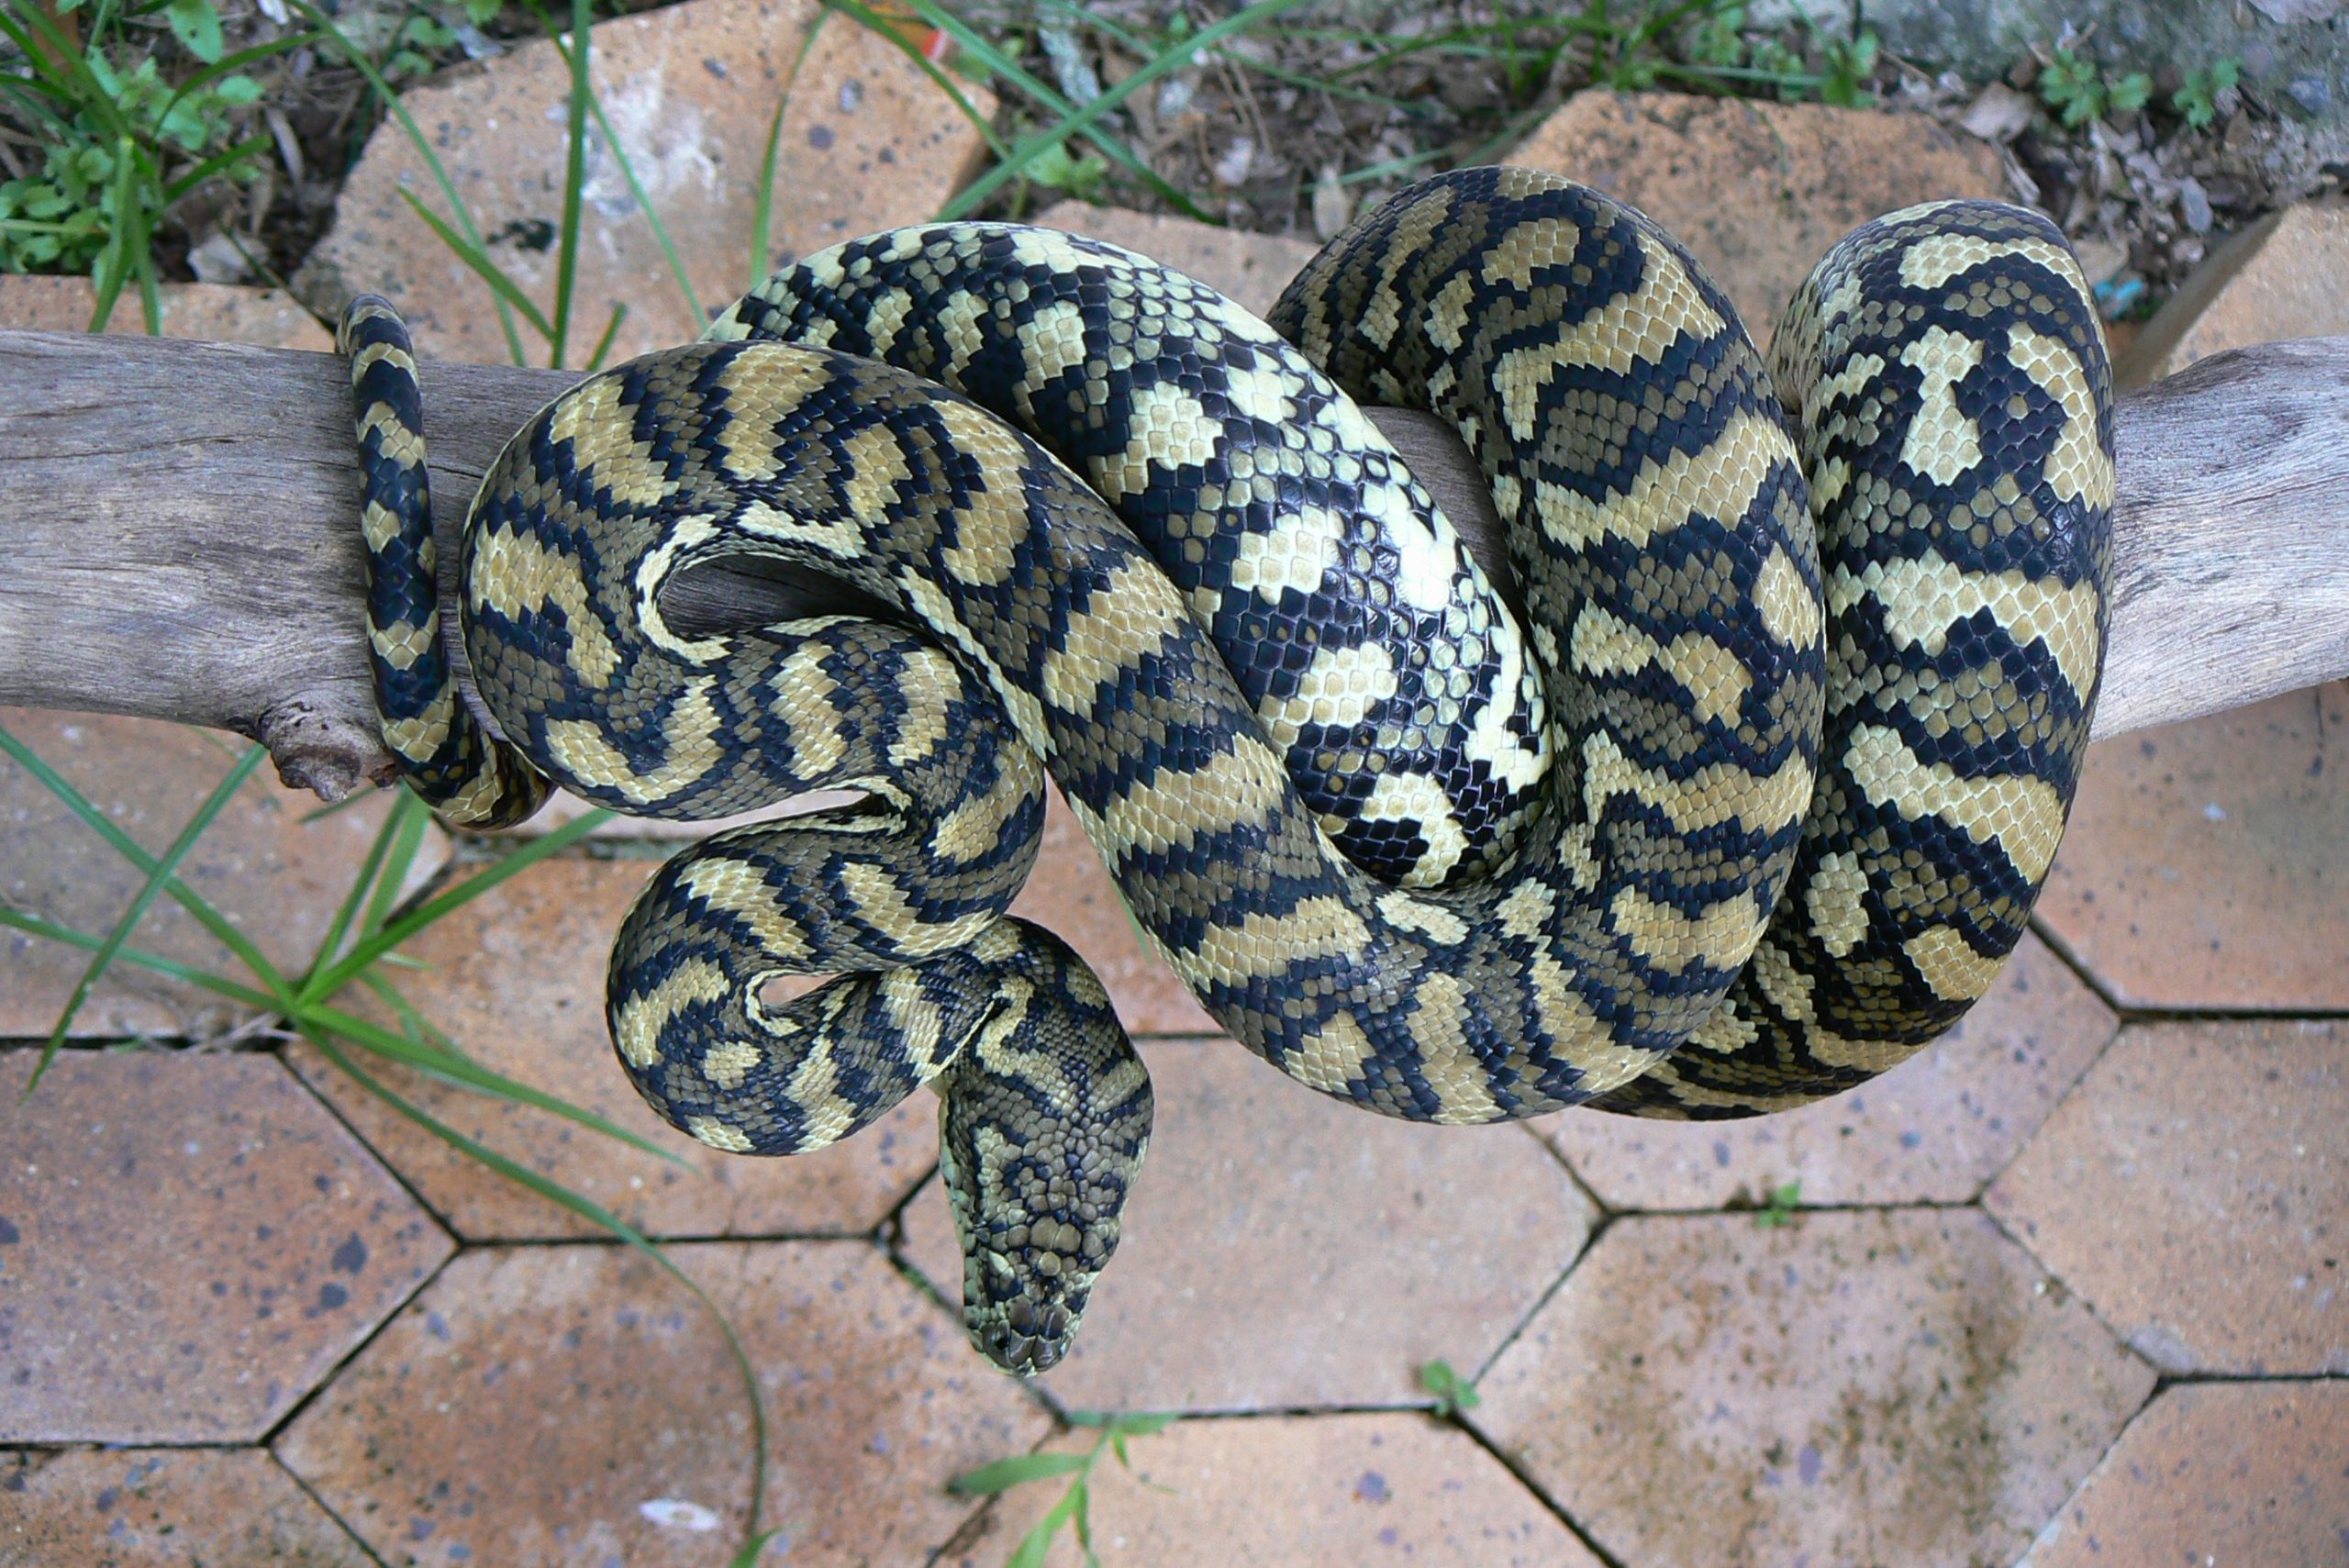 Coastal Carpet Python (Morelia spilota)